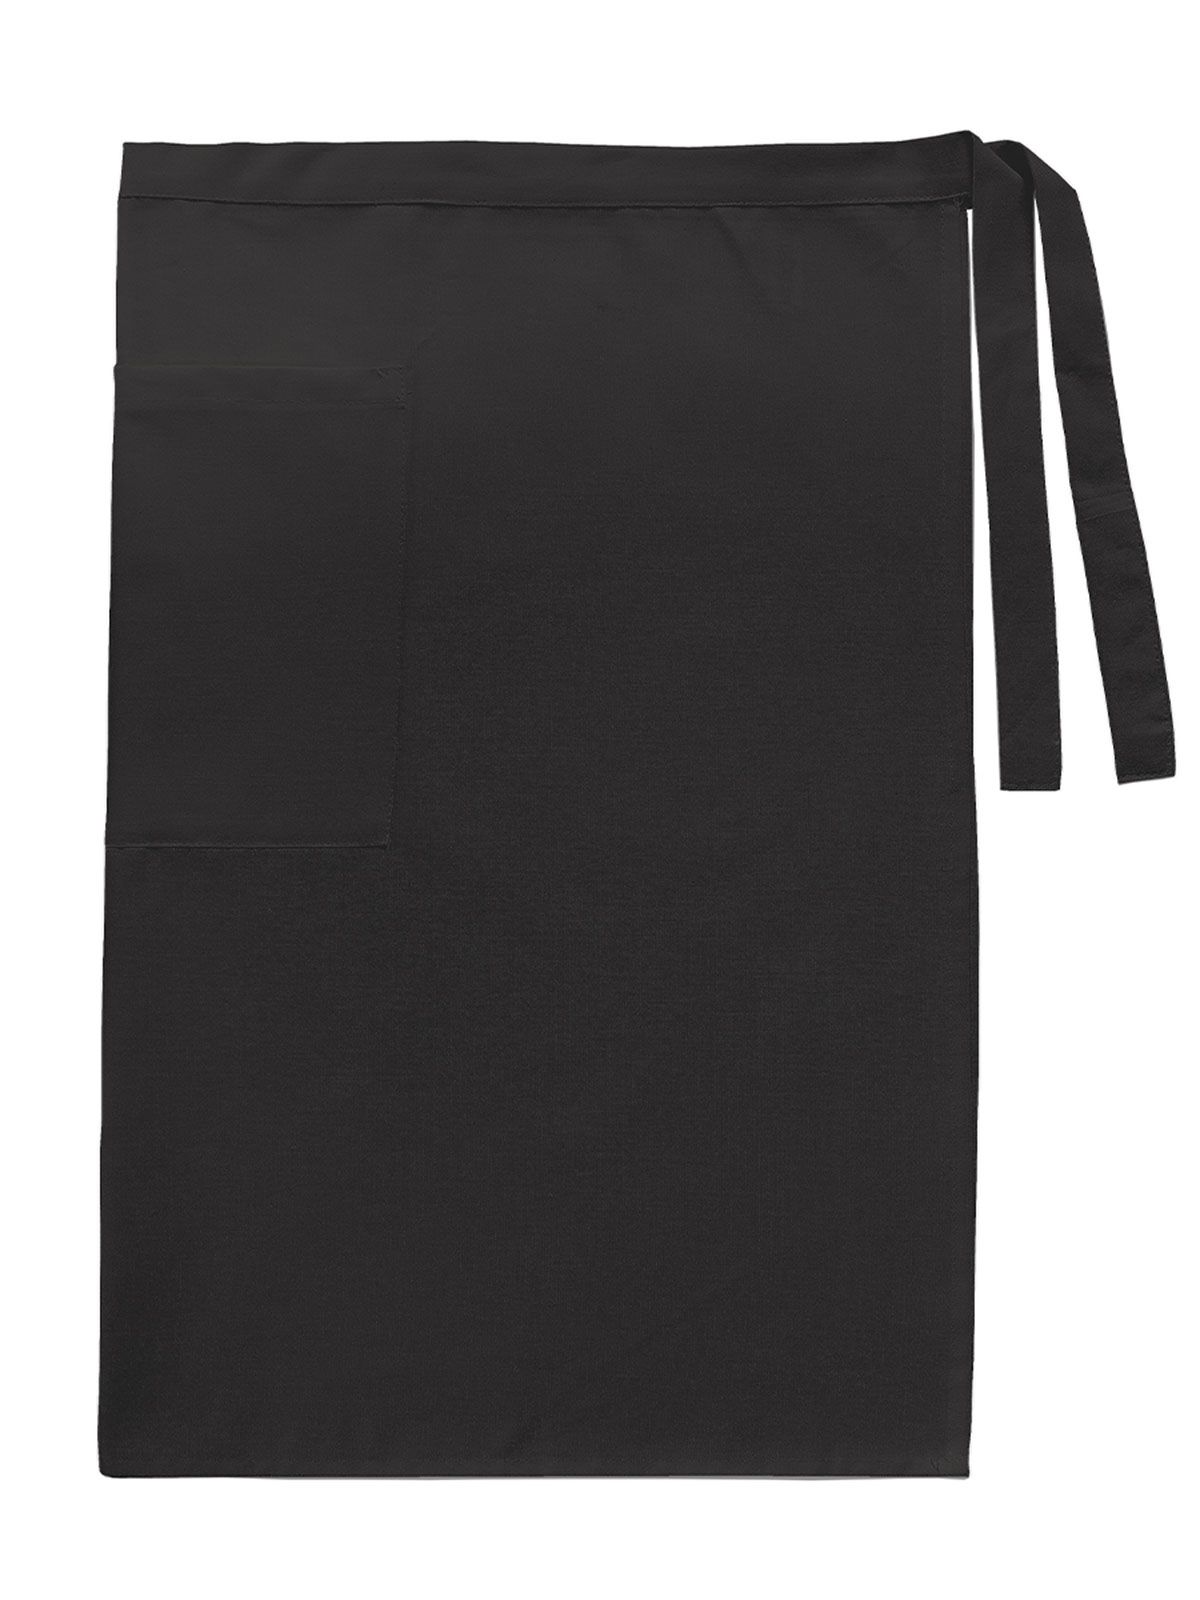 waist-apron-man-w-pocket-canvas-black.webp